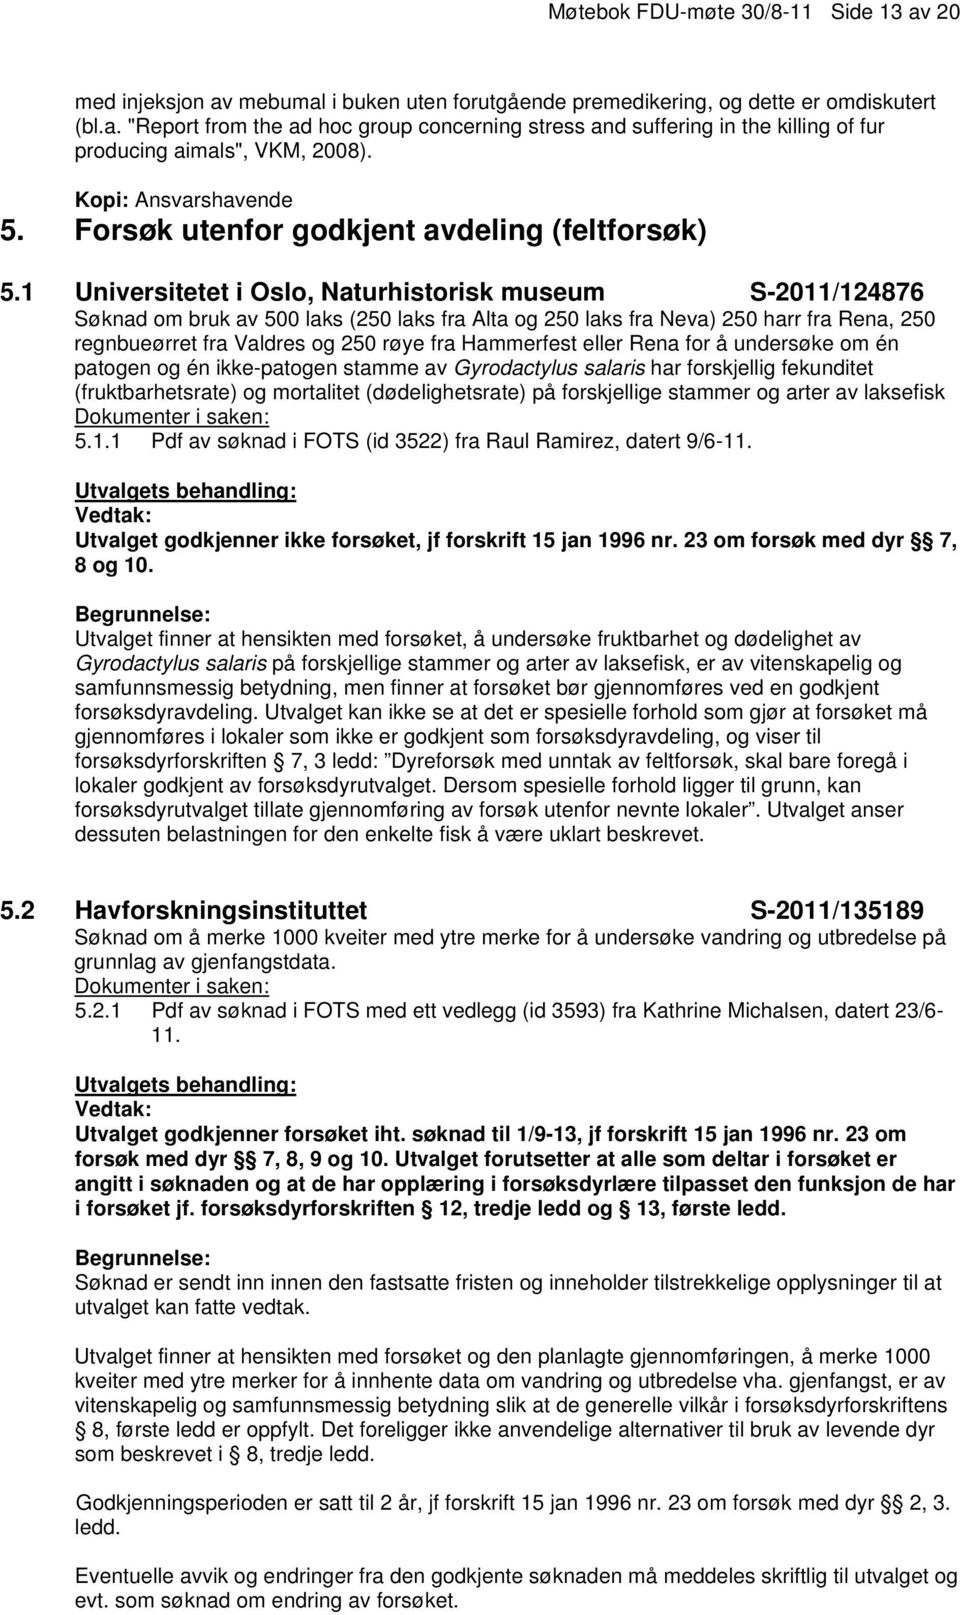 1 Universitetet i Oslo, Naturhistorisk museum S-2011/124876 Søknad om bruk av 500 laks (250 laks fra Alta og 250 laks fra Neva) 250 harr fra Rena, 250 regnbueørret fra Valdres og 250 røye fra